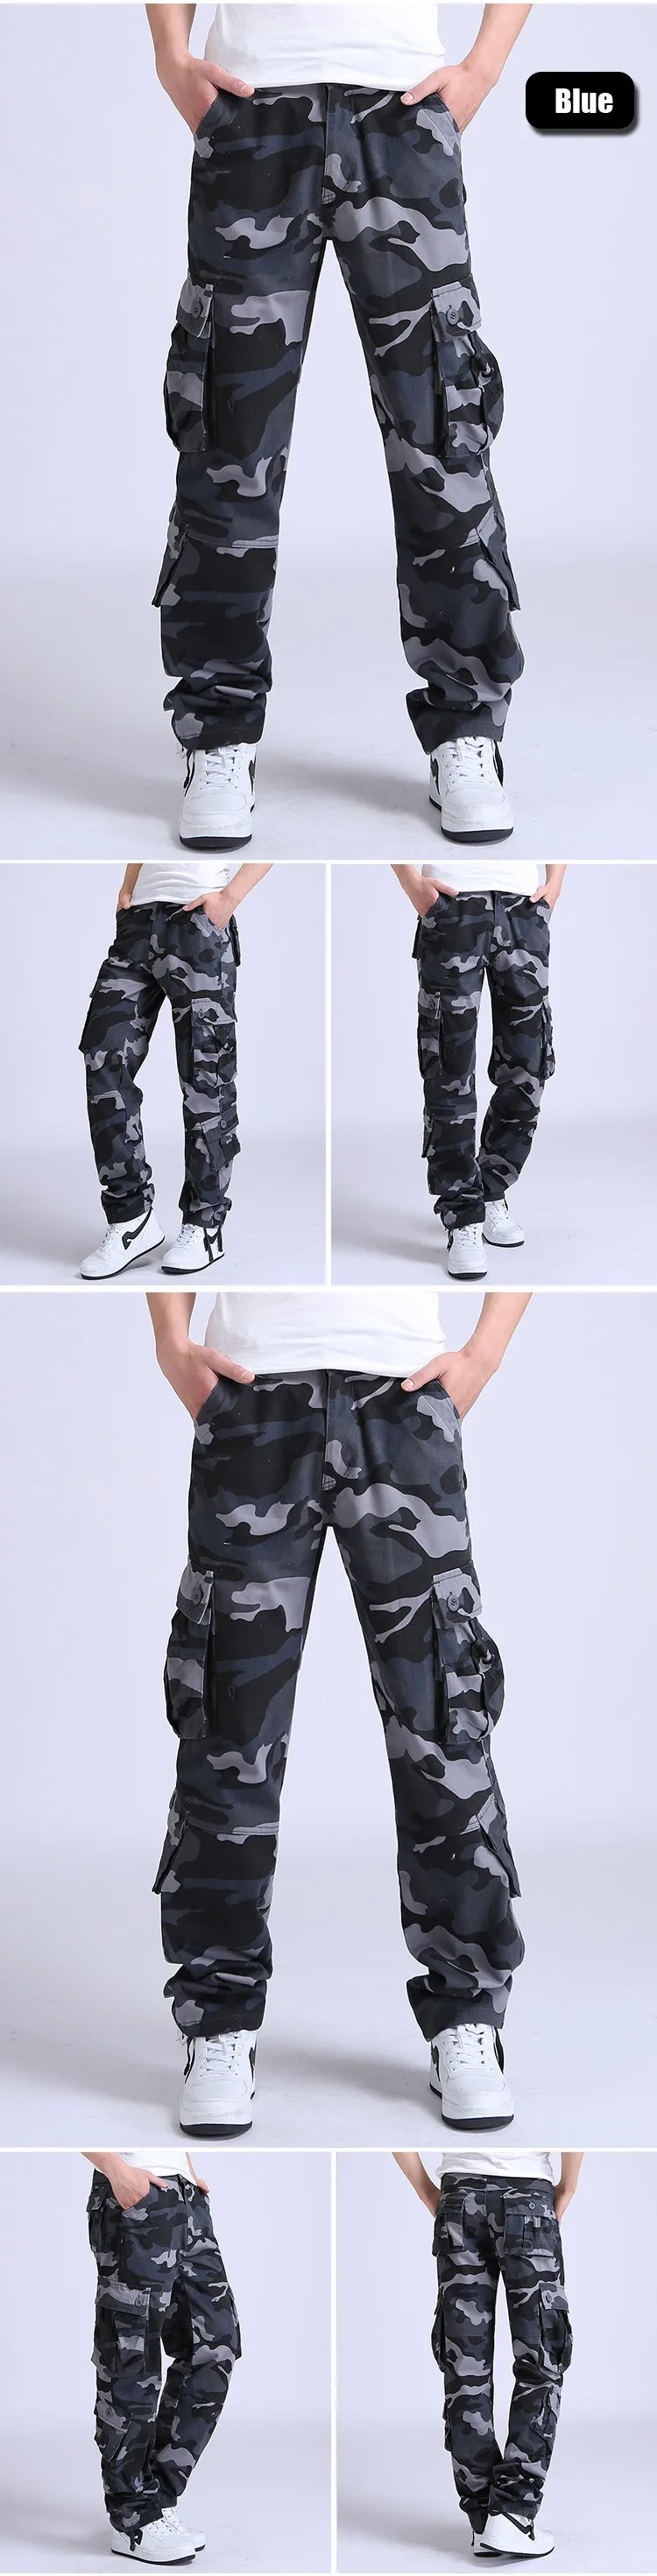 YOLAO высокое качество Мужские брюки карго милитари для Для мужчин с карманами комбинезоны тактические армейские брюки камуфляж Мода